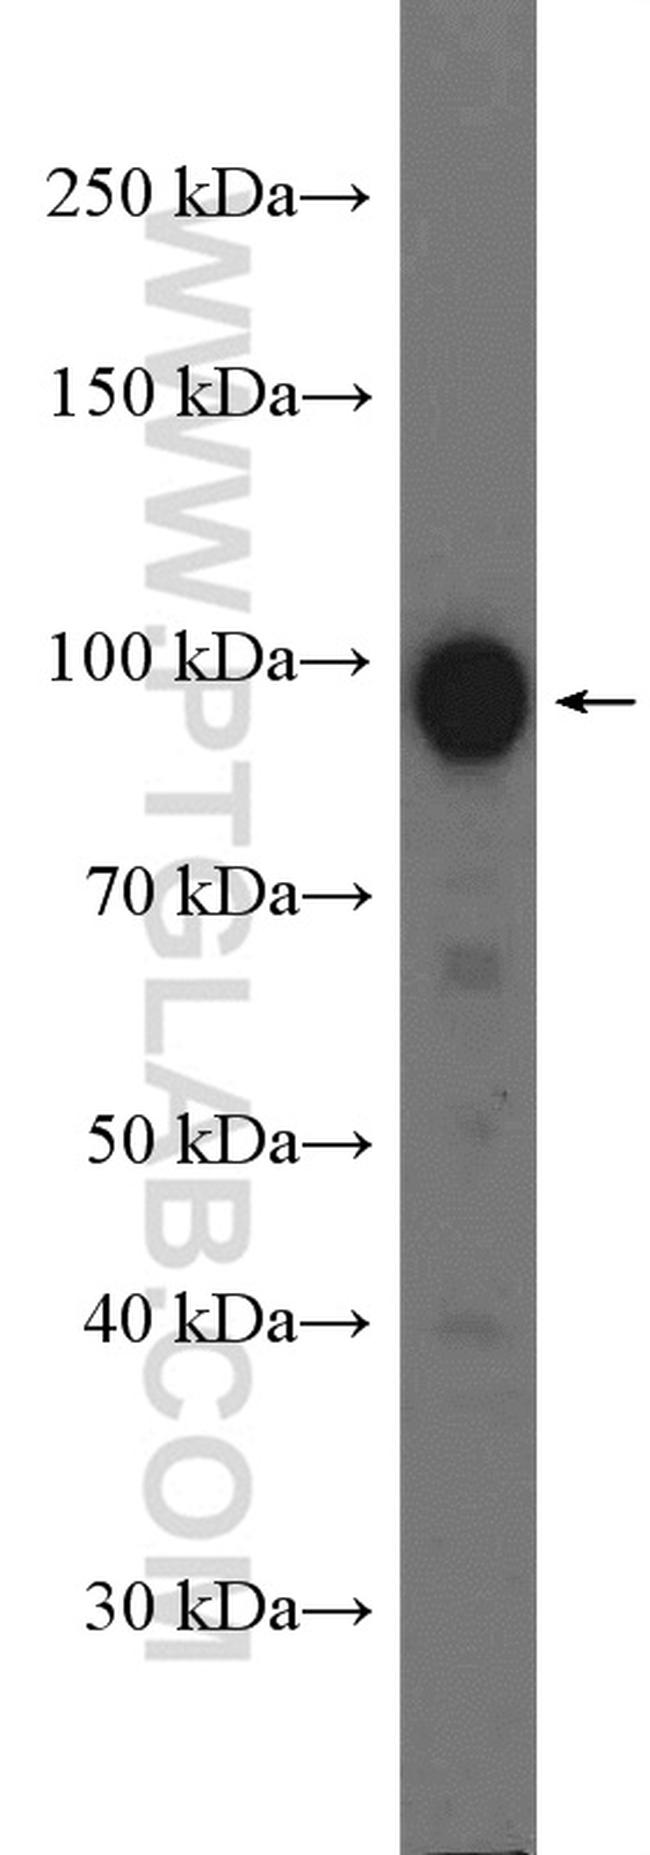 RALBP1 Antibody in Western Blot (WB)